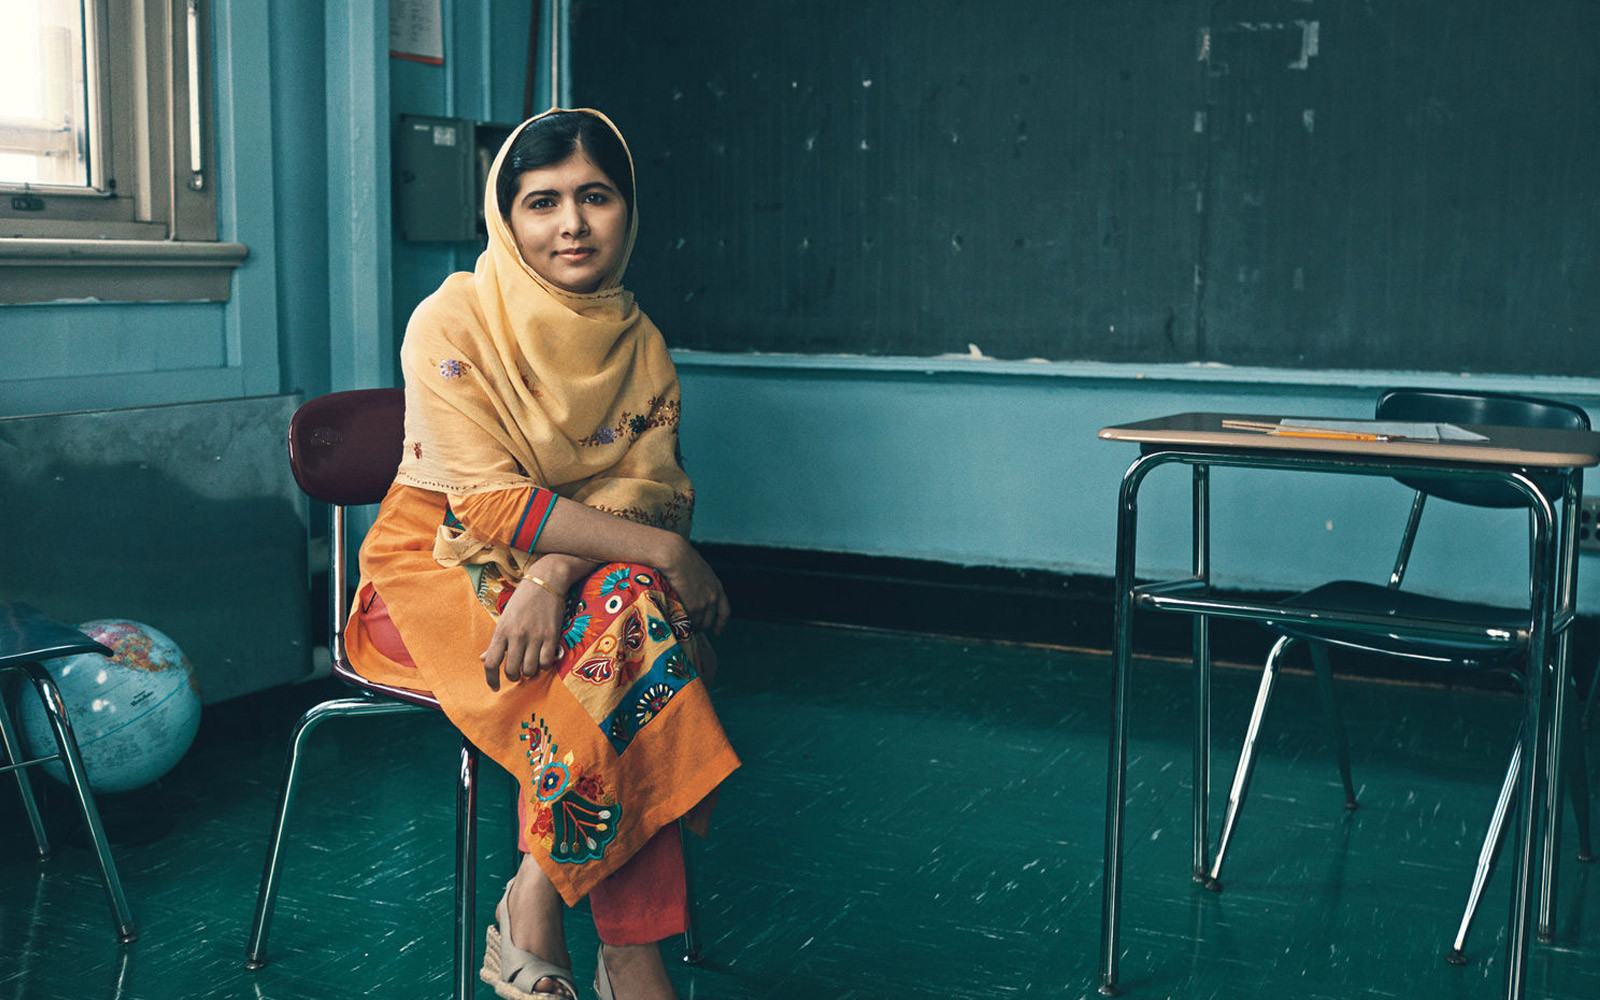 Το ντοκιμαντέρ για την βραβευμένη με Νόμπελ Ειρήνης, Μαλάλα: «He named me Malala»